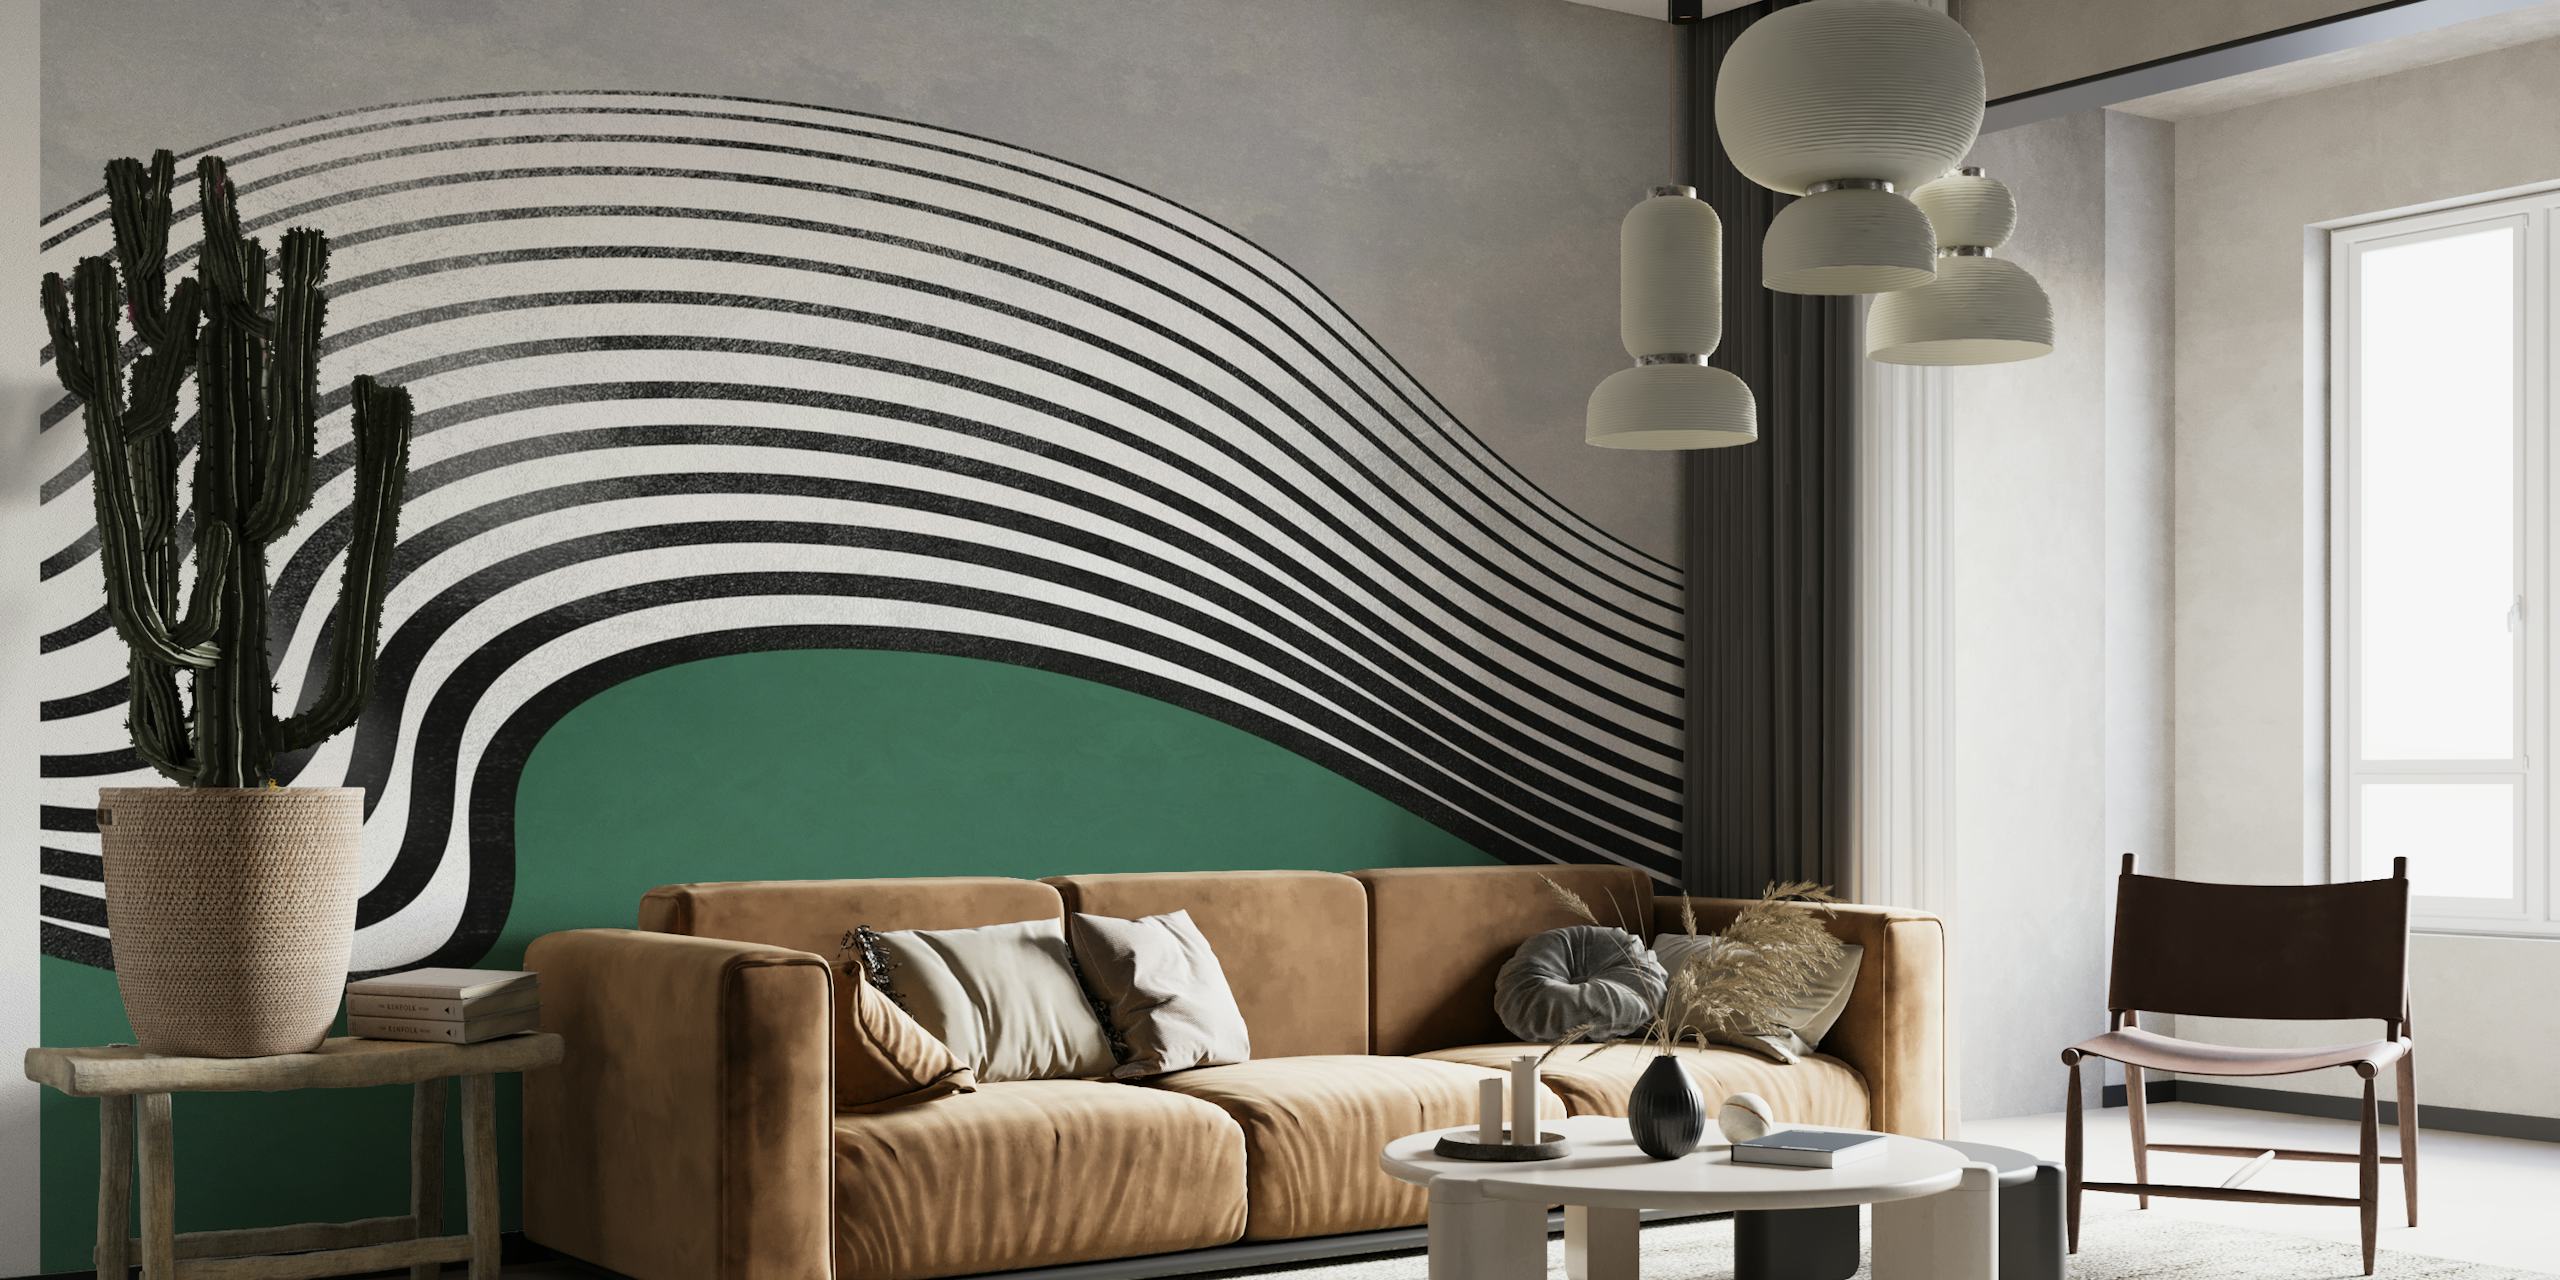 Design de onda abstrata com linhas curvas em fundo verde para mural de parede